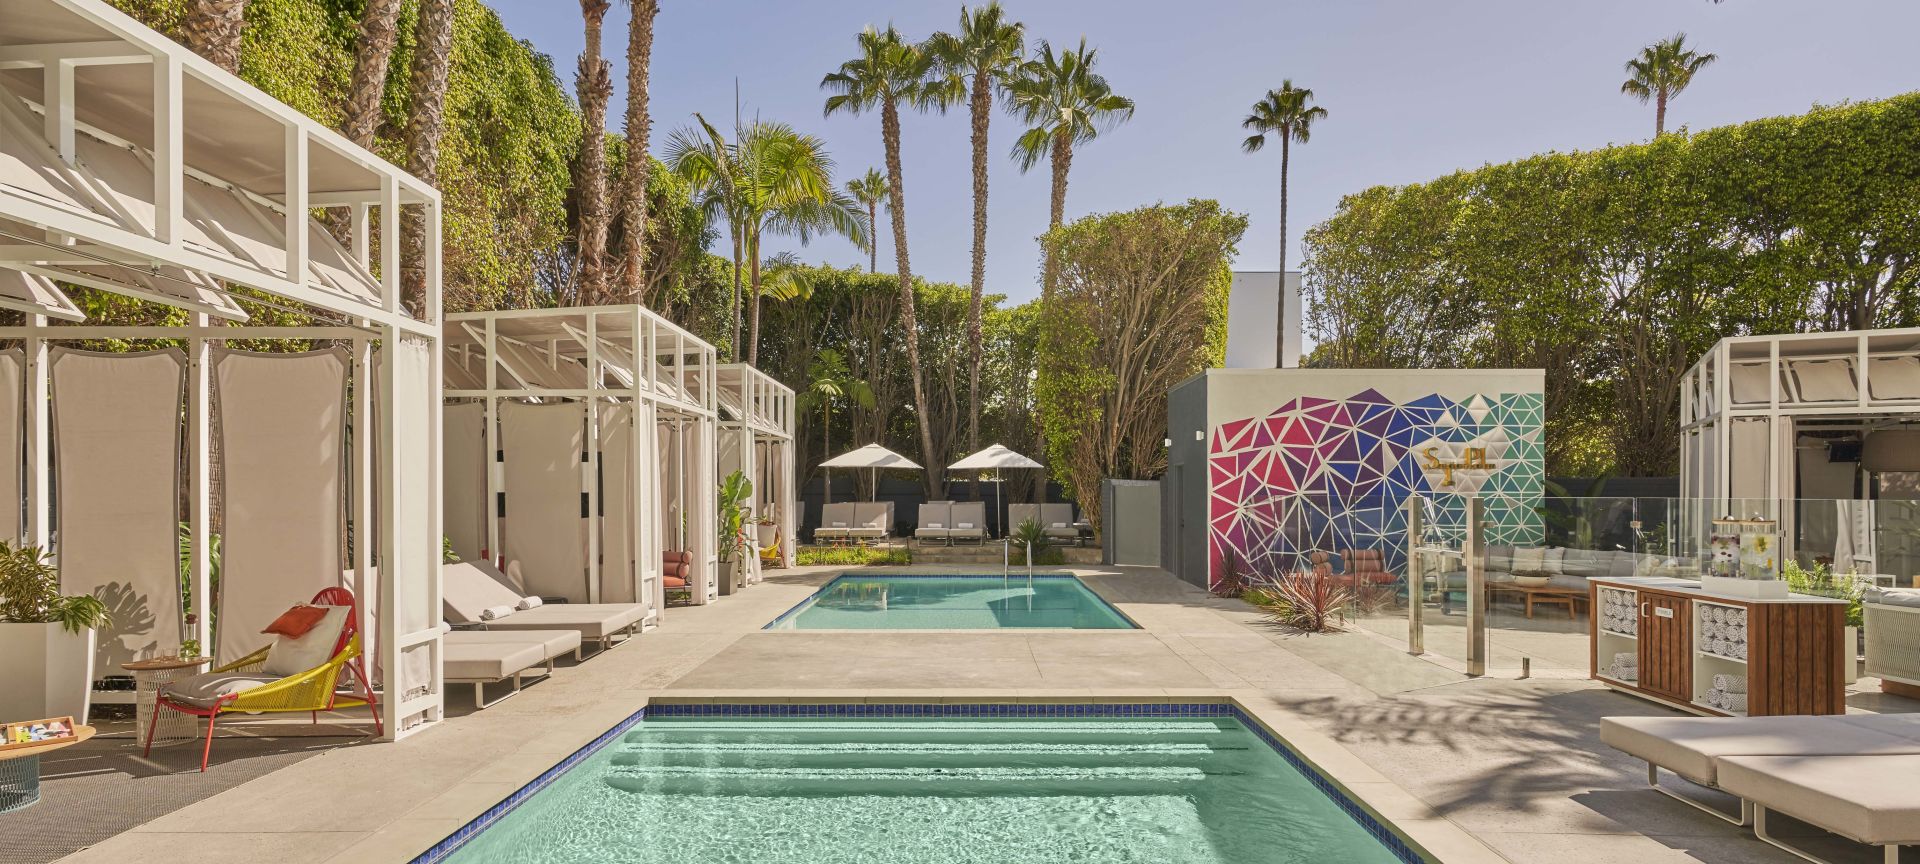 The pools and cabanas at Viceroy Santa Monica